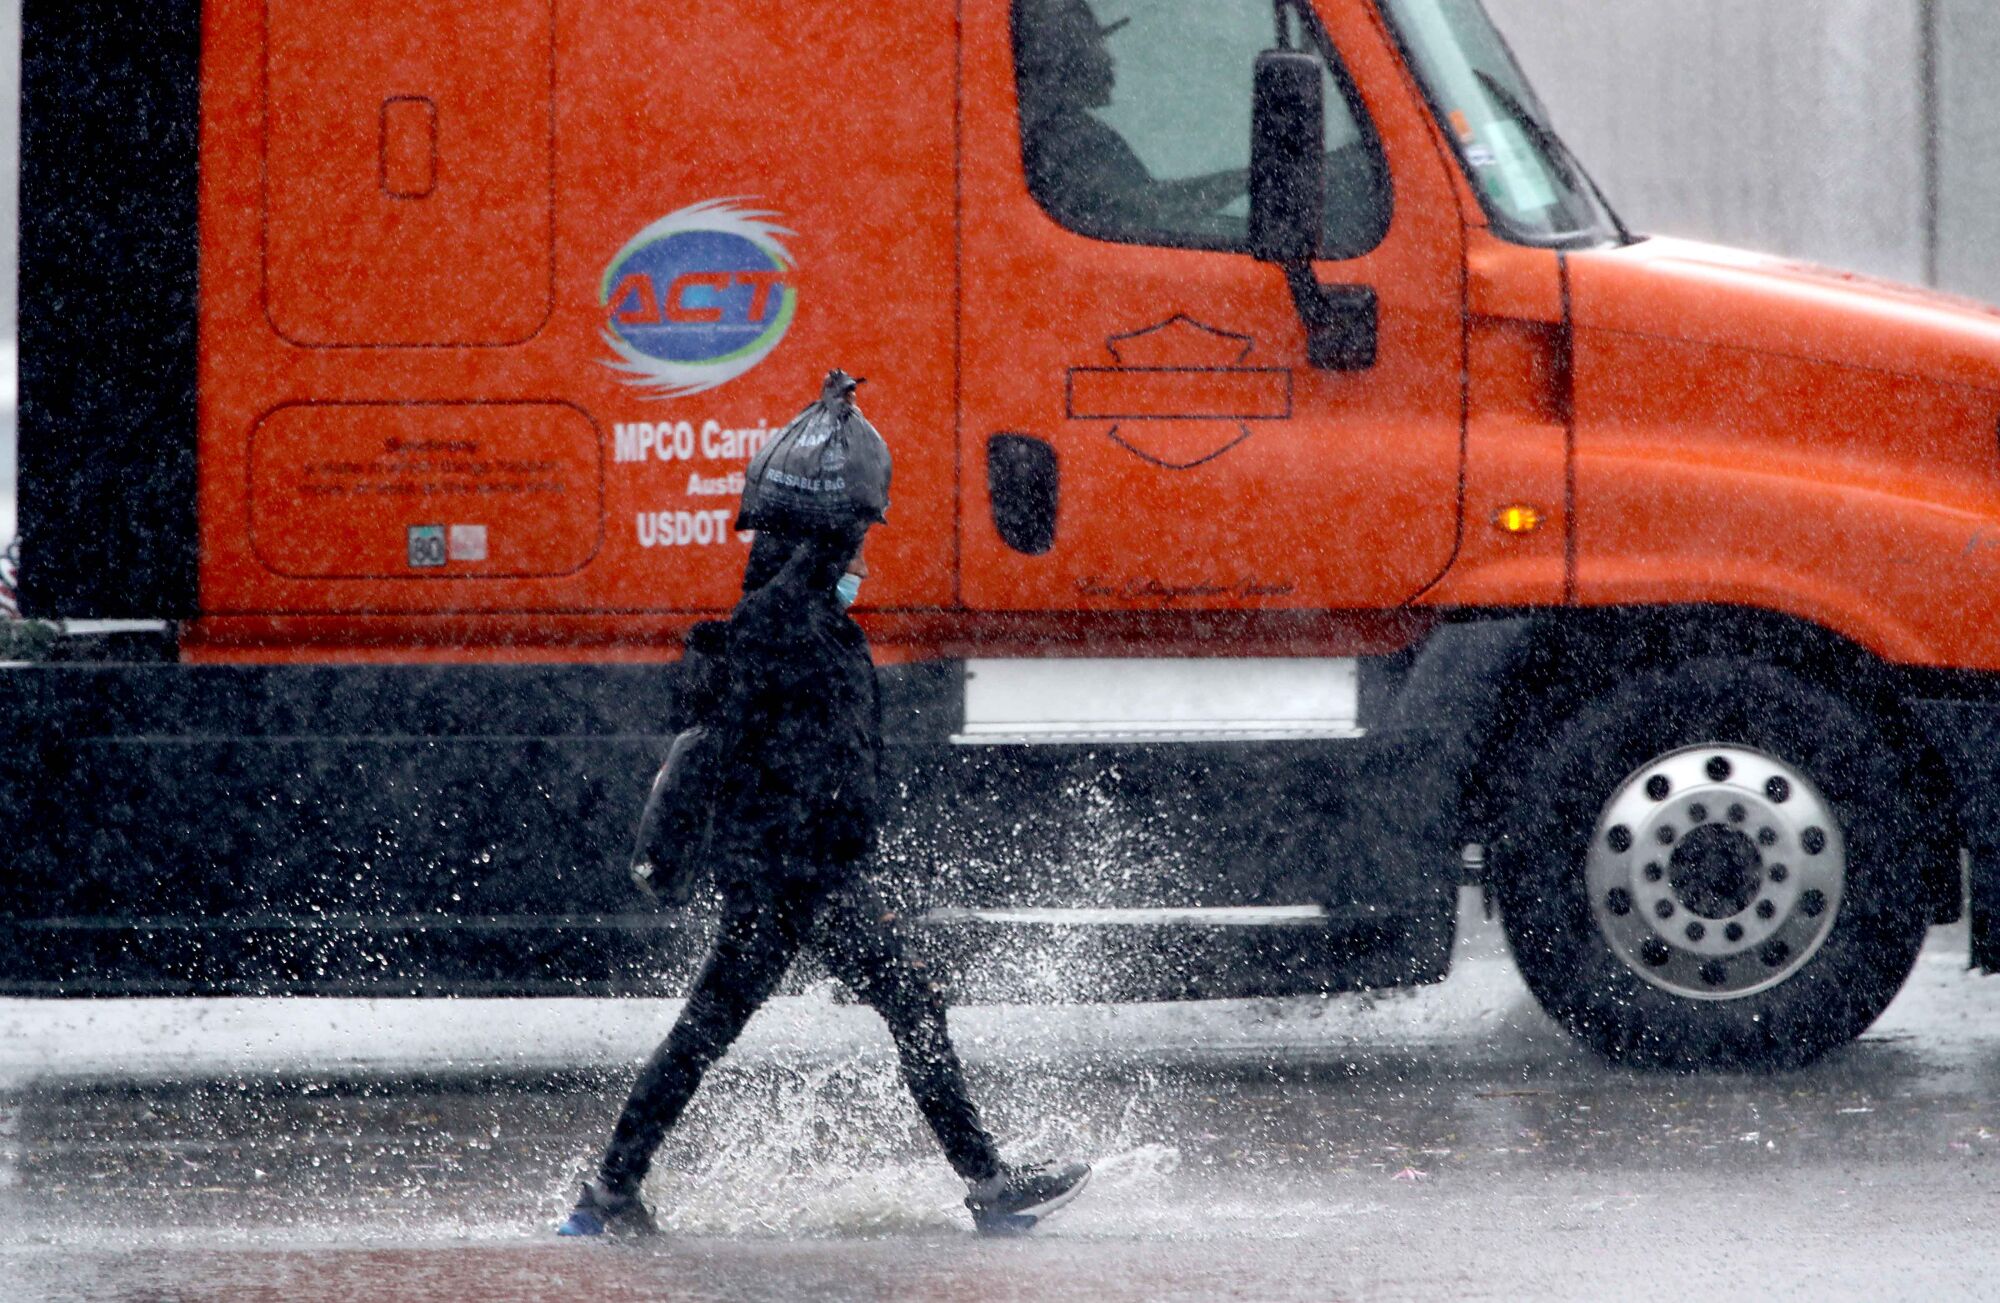 A pedestrian splashes next to a truck.